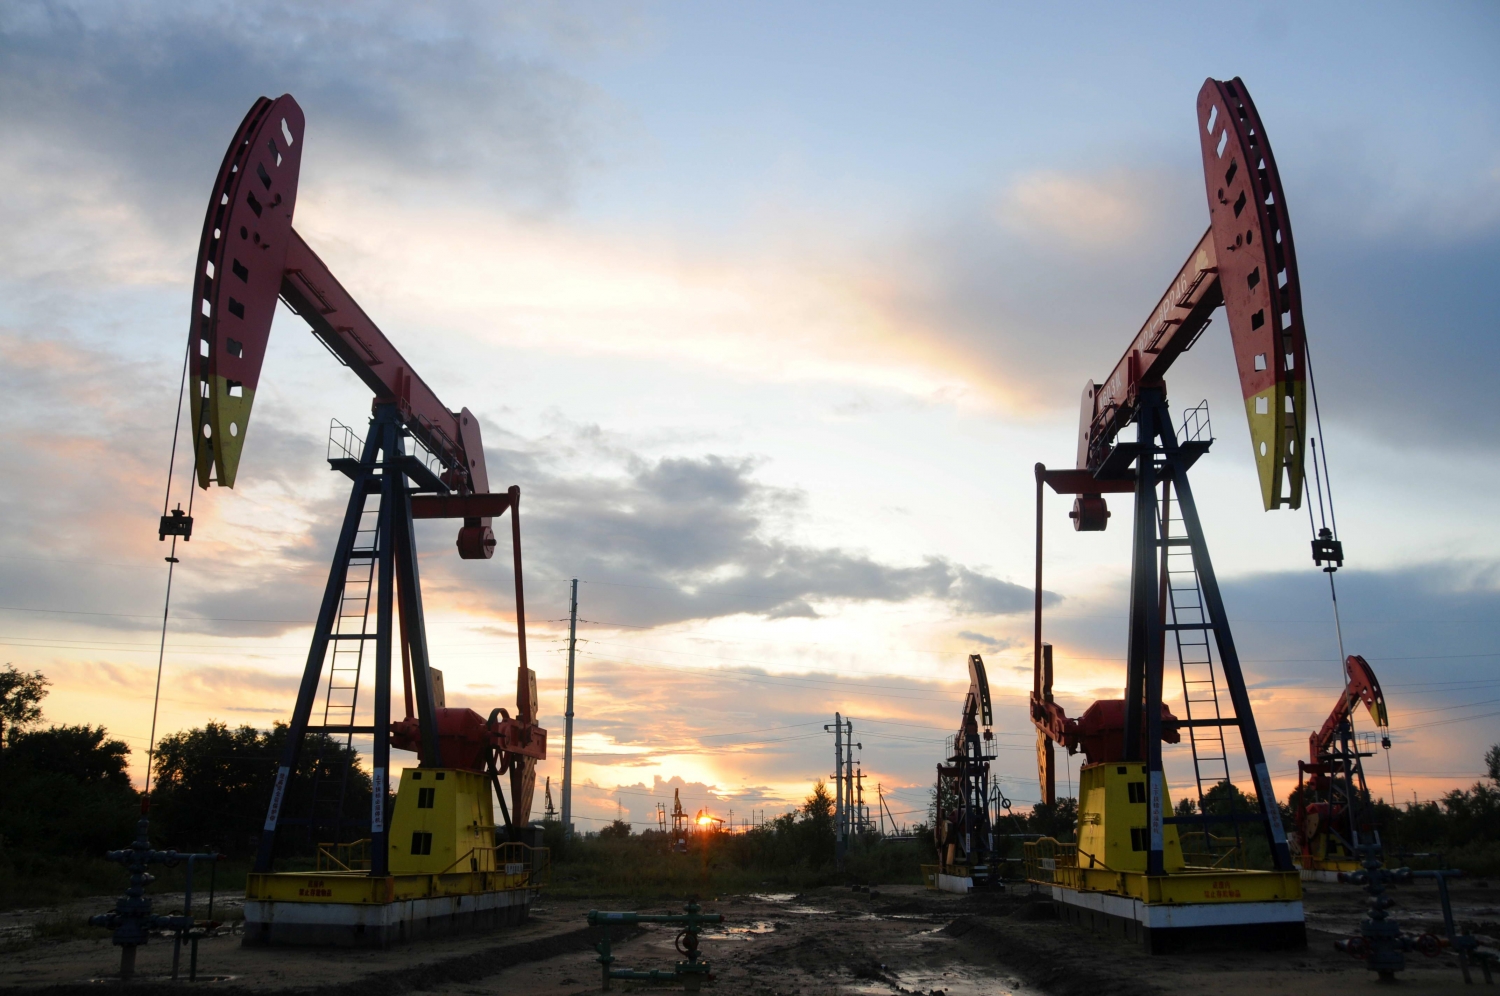 Tăng trưởng nhu cầu dầu mỏ dự báo sẽ chậm lại nhưng vẫn ở mức cao trong năm 2023 – IEA